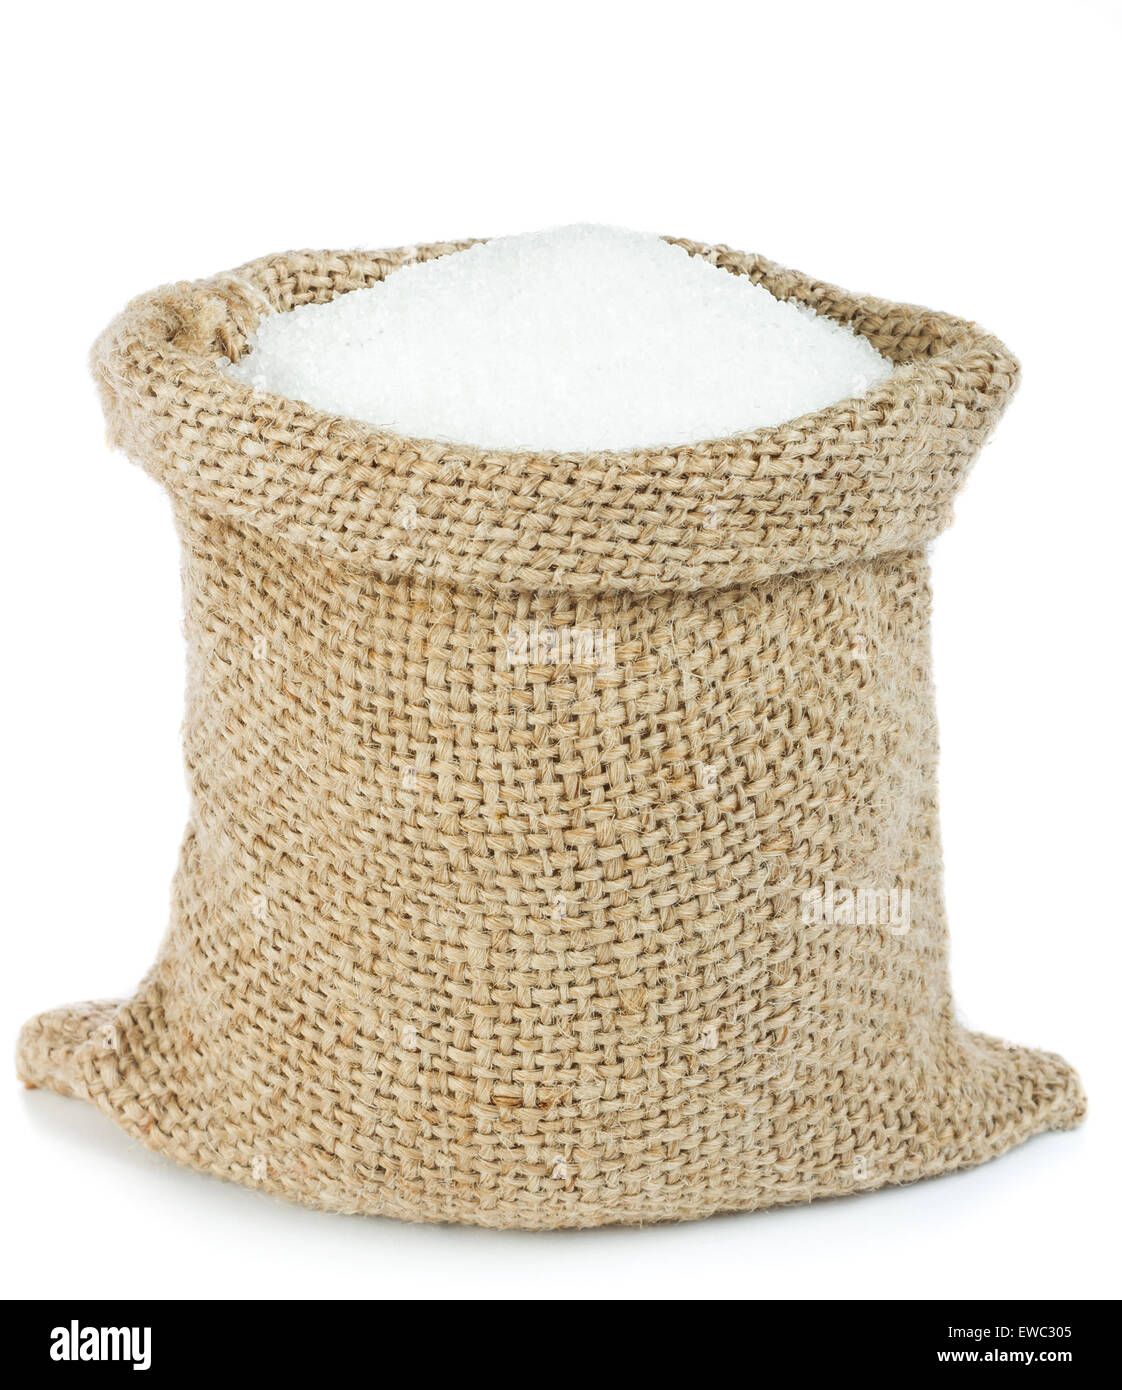 El azúcar blanco en bolsa de arpillera Foto de stock